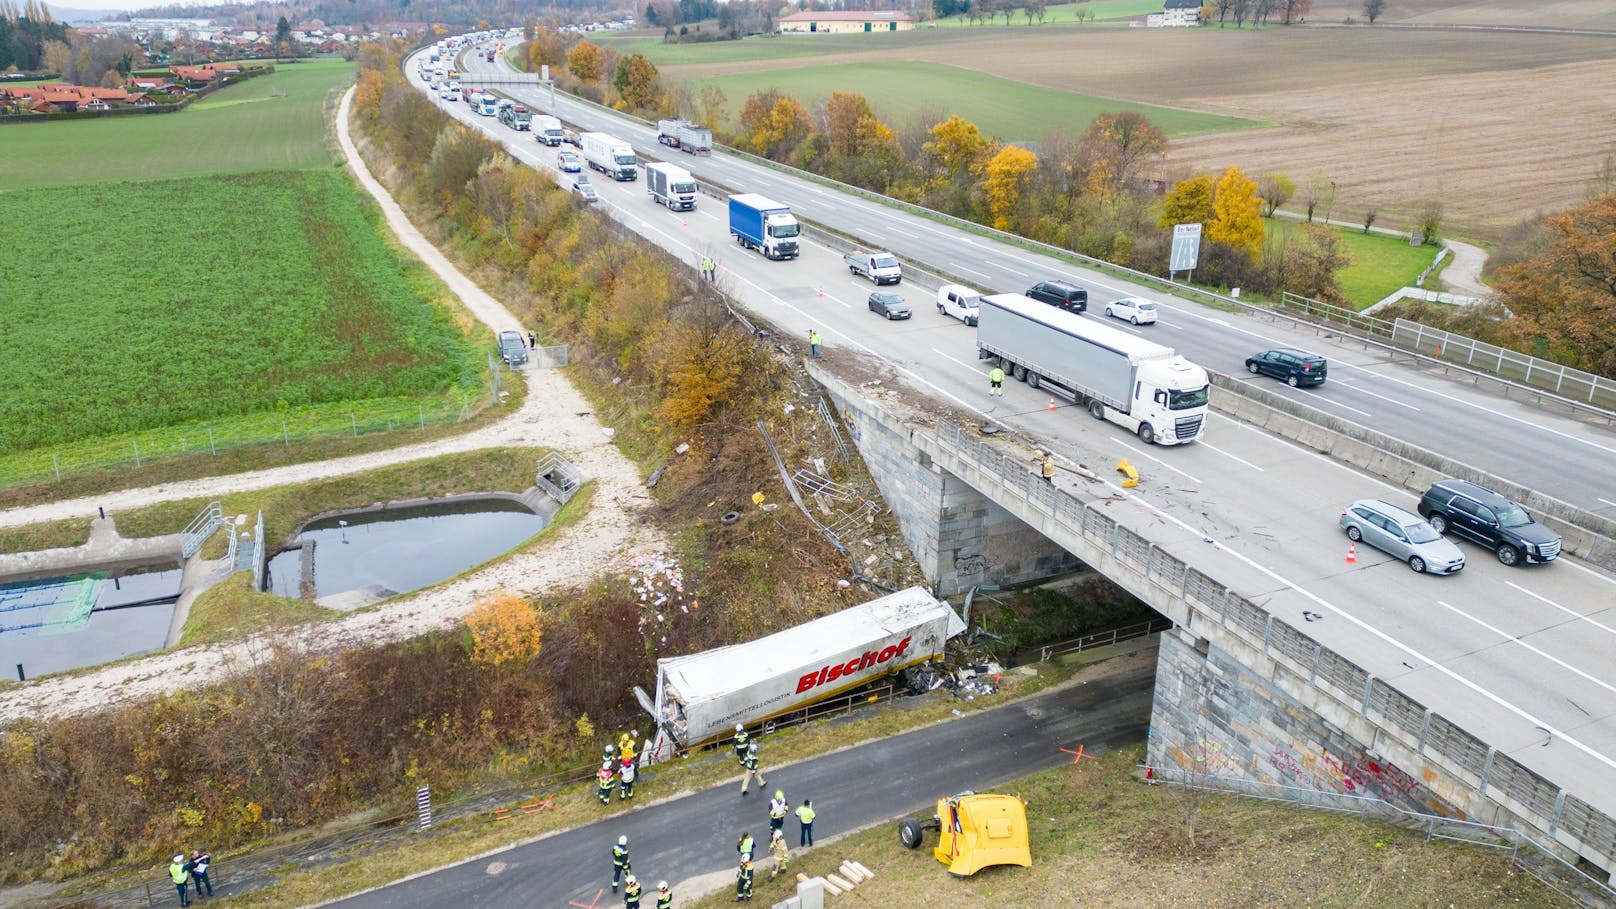 Lkw stürzt von Autobahn-Brücke, wird "völlig zerstört"